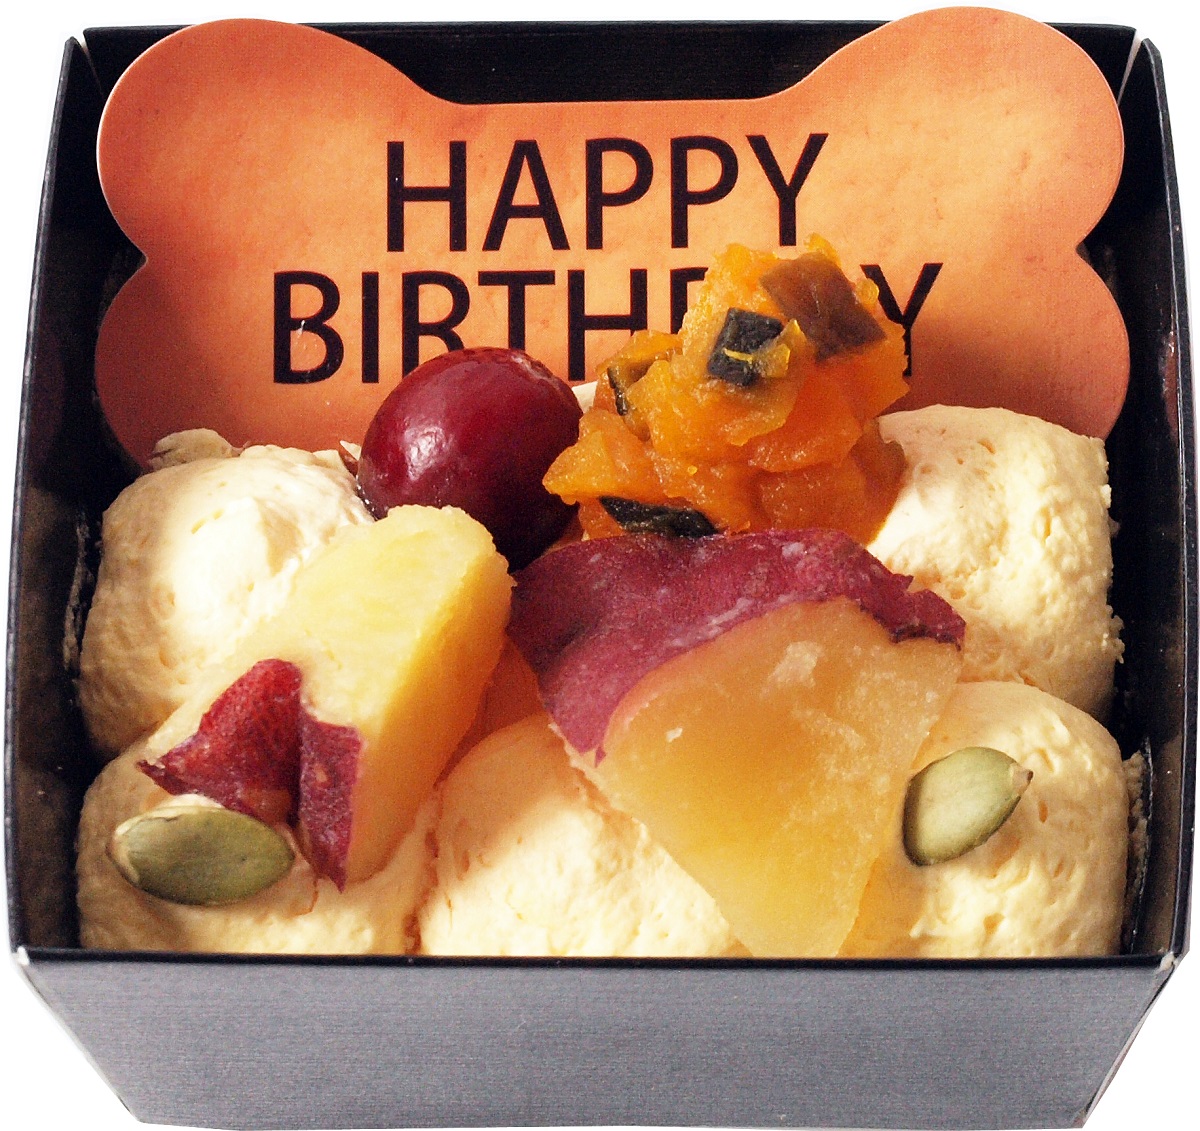 楽天市場 コミフ 野菜のバースデーケーキ ペットケーキ 誕生日ケーキ バースデーケーキ 犬用 ワンちゃん用 誕生日ケーキのお店ケベック